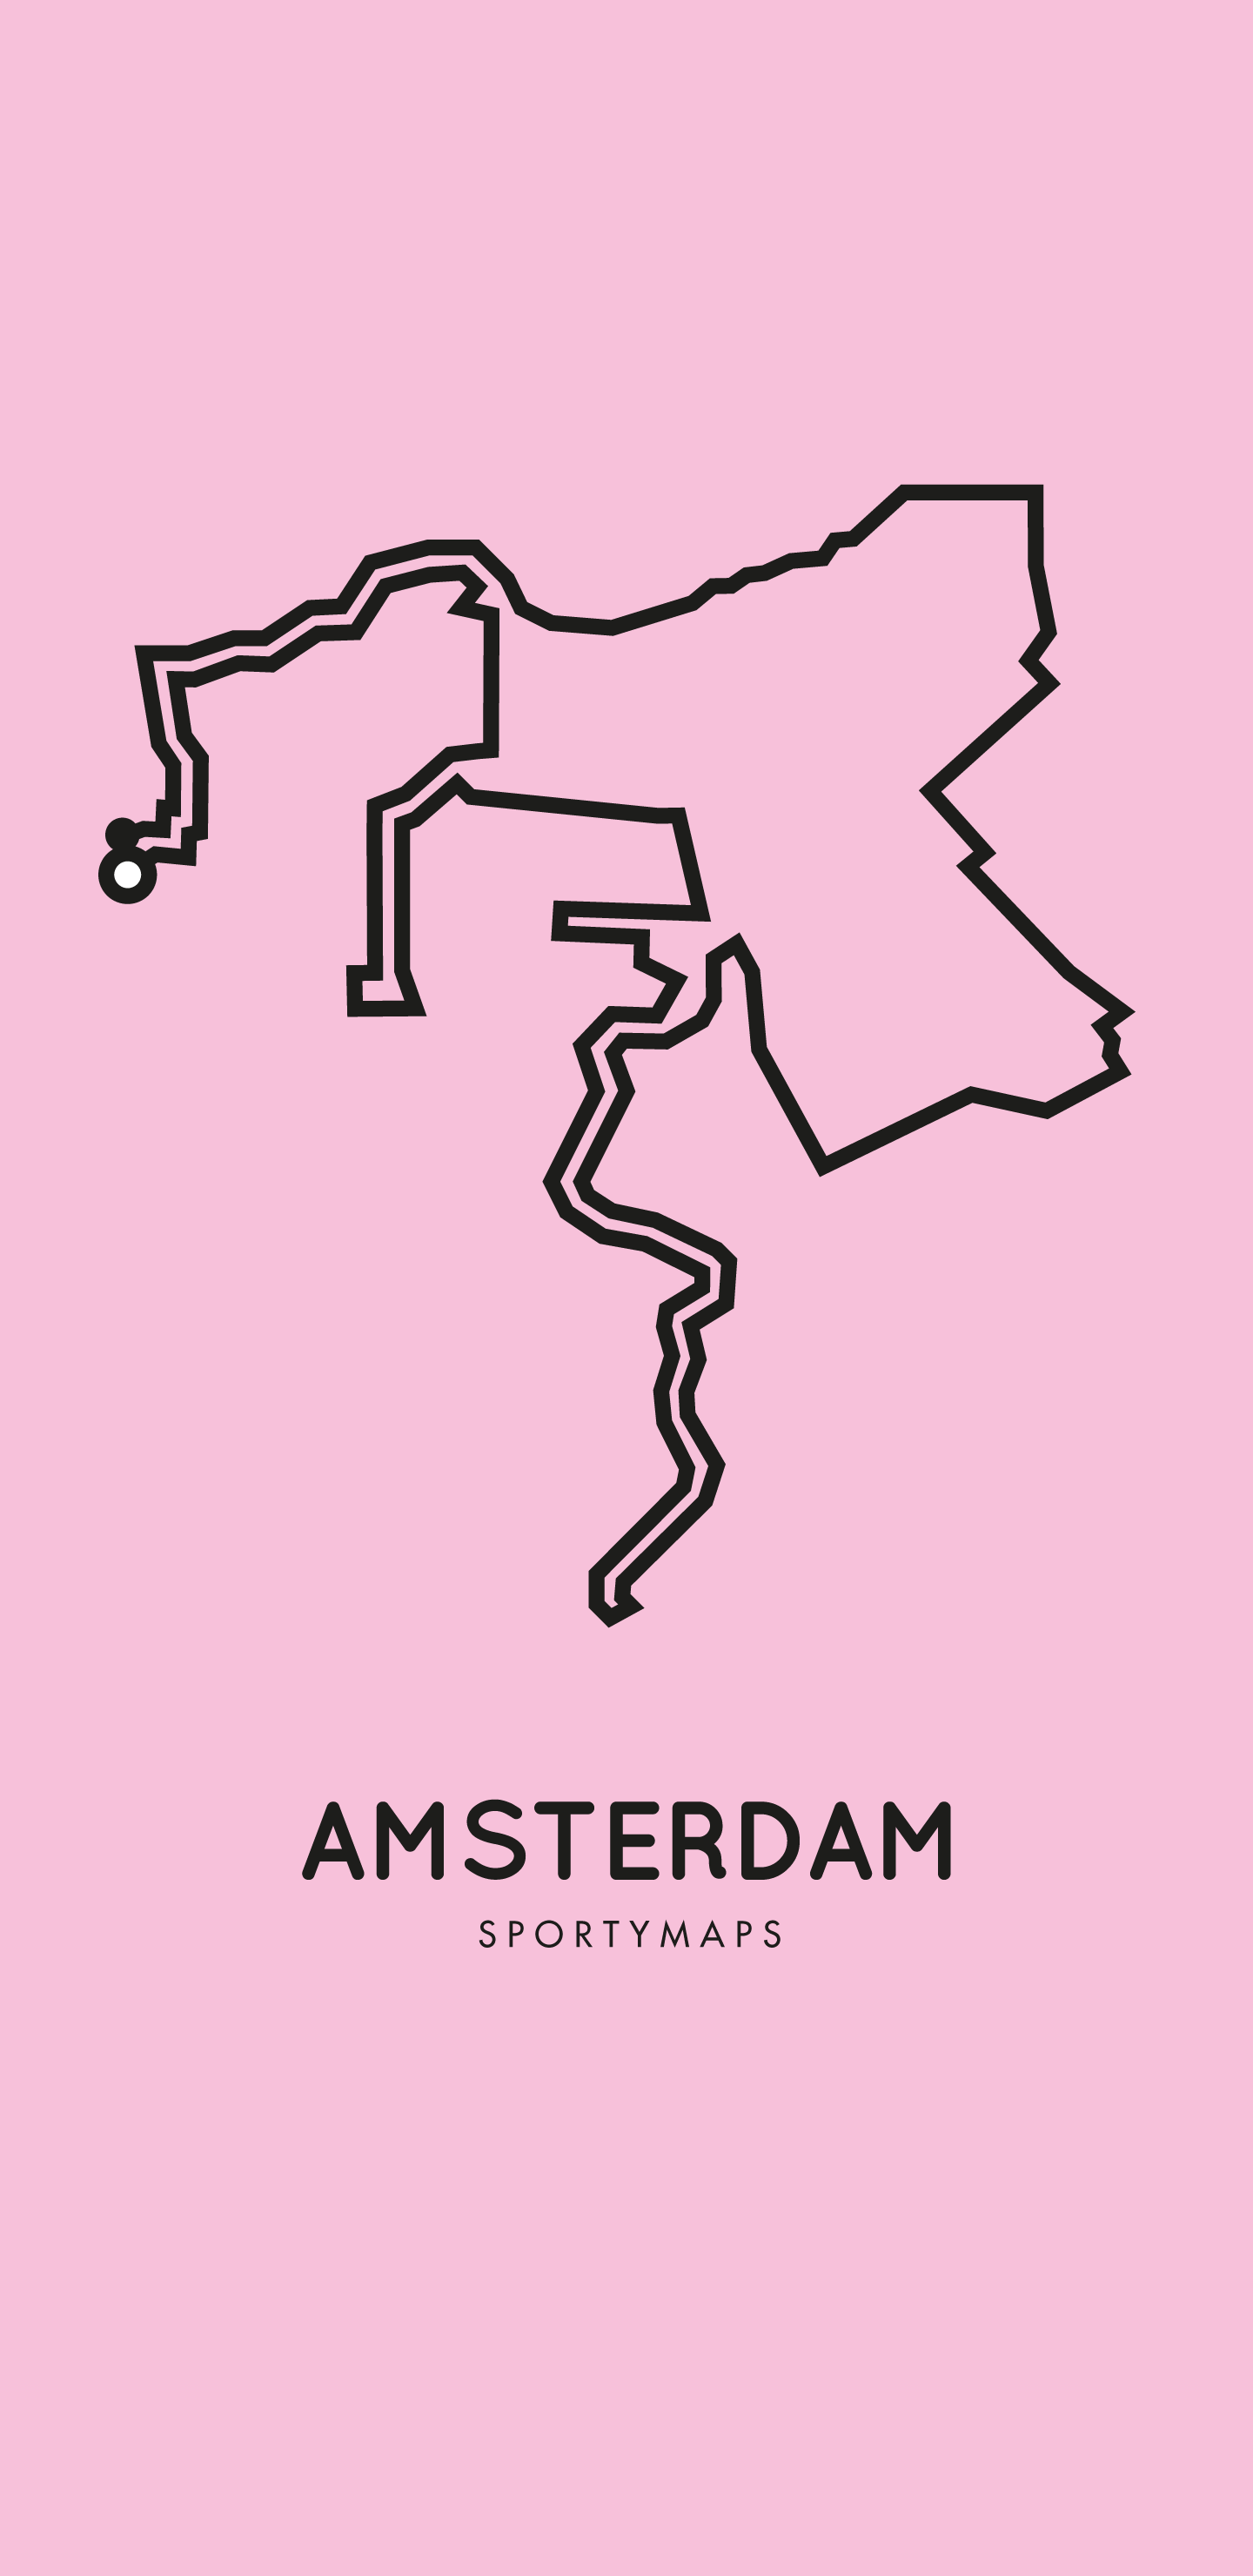 Sportymaps-Amsterdam-marathon-pink